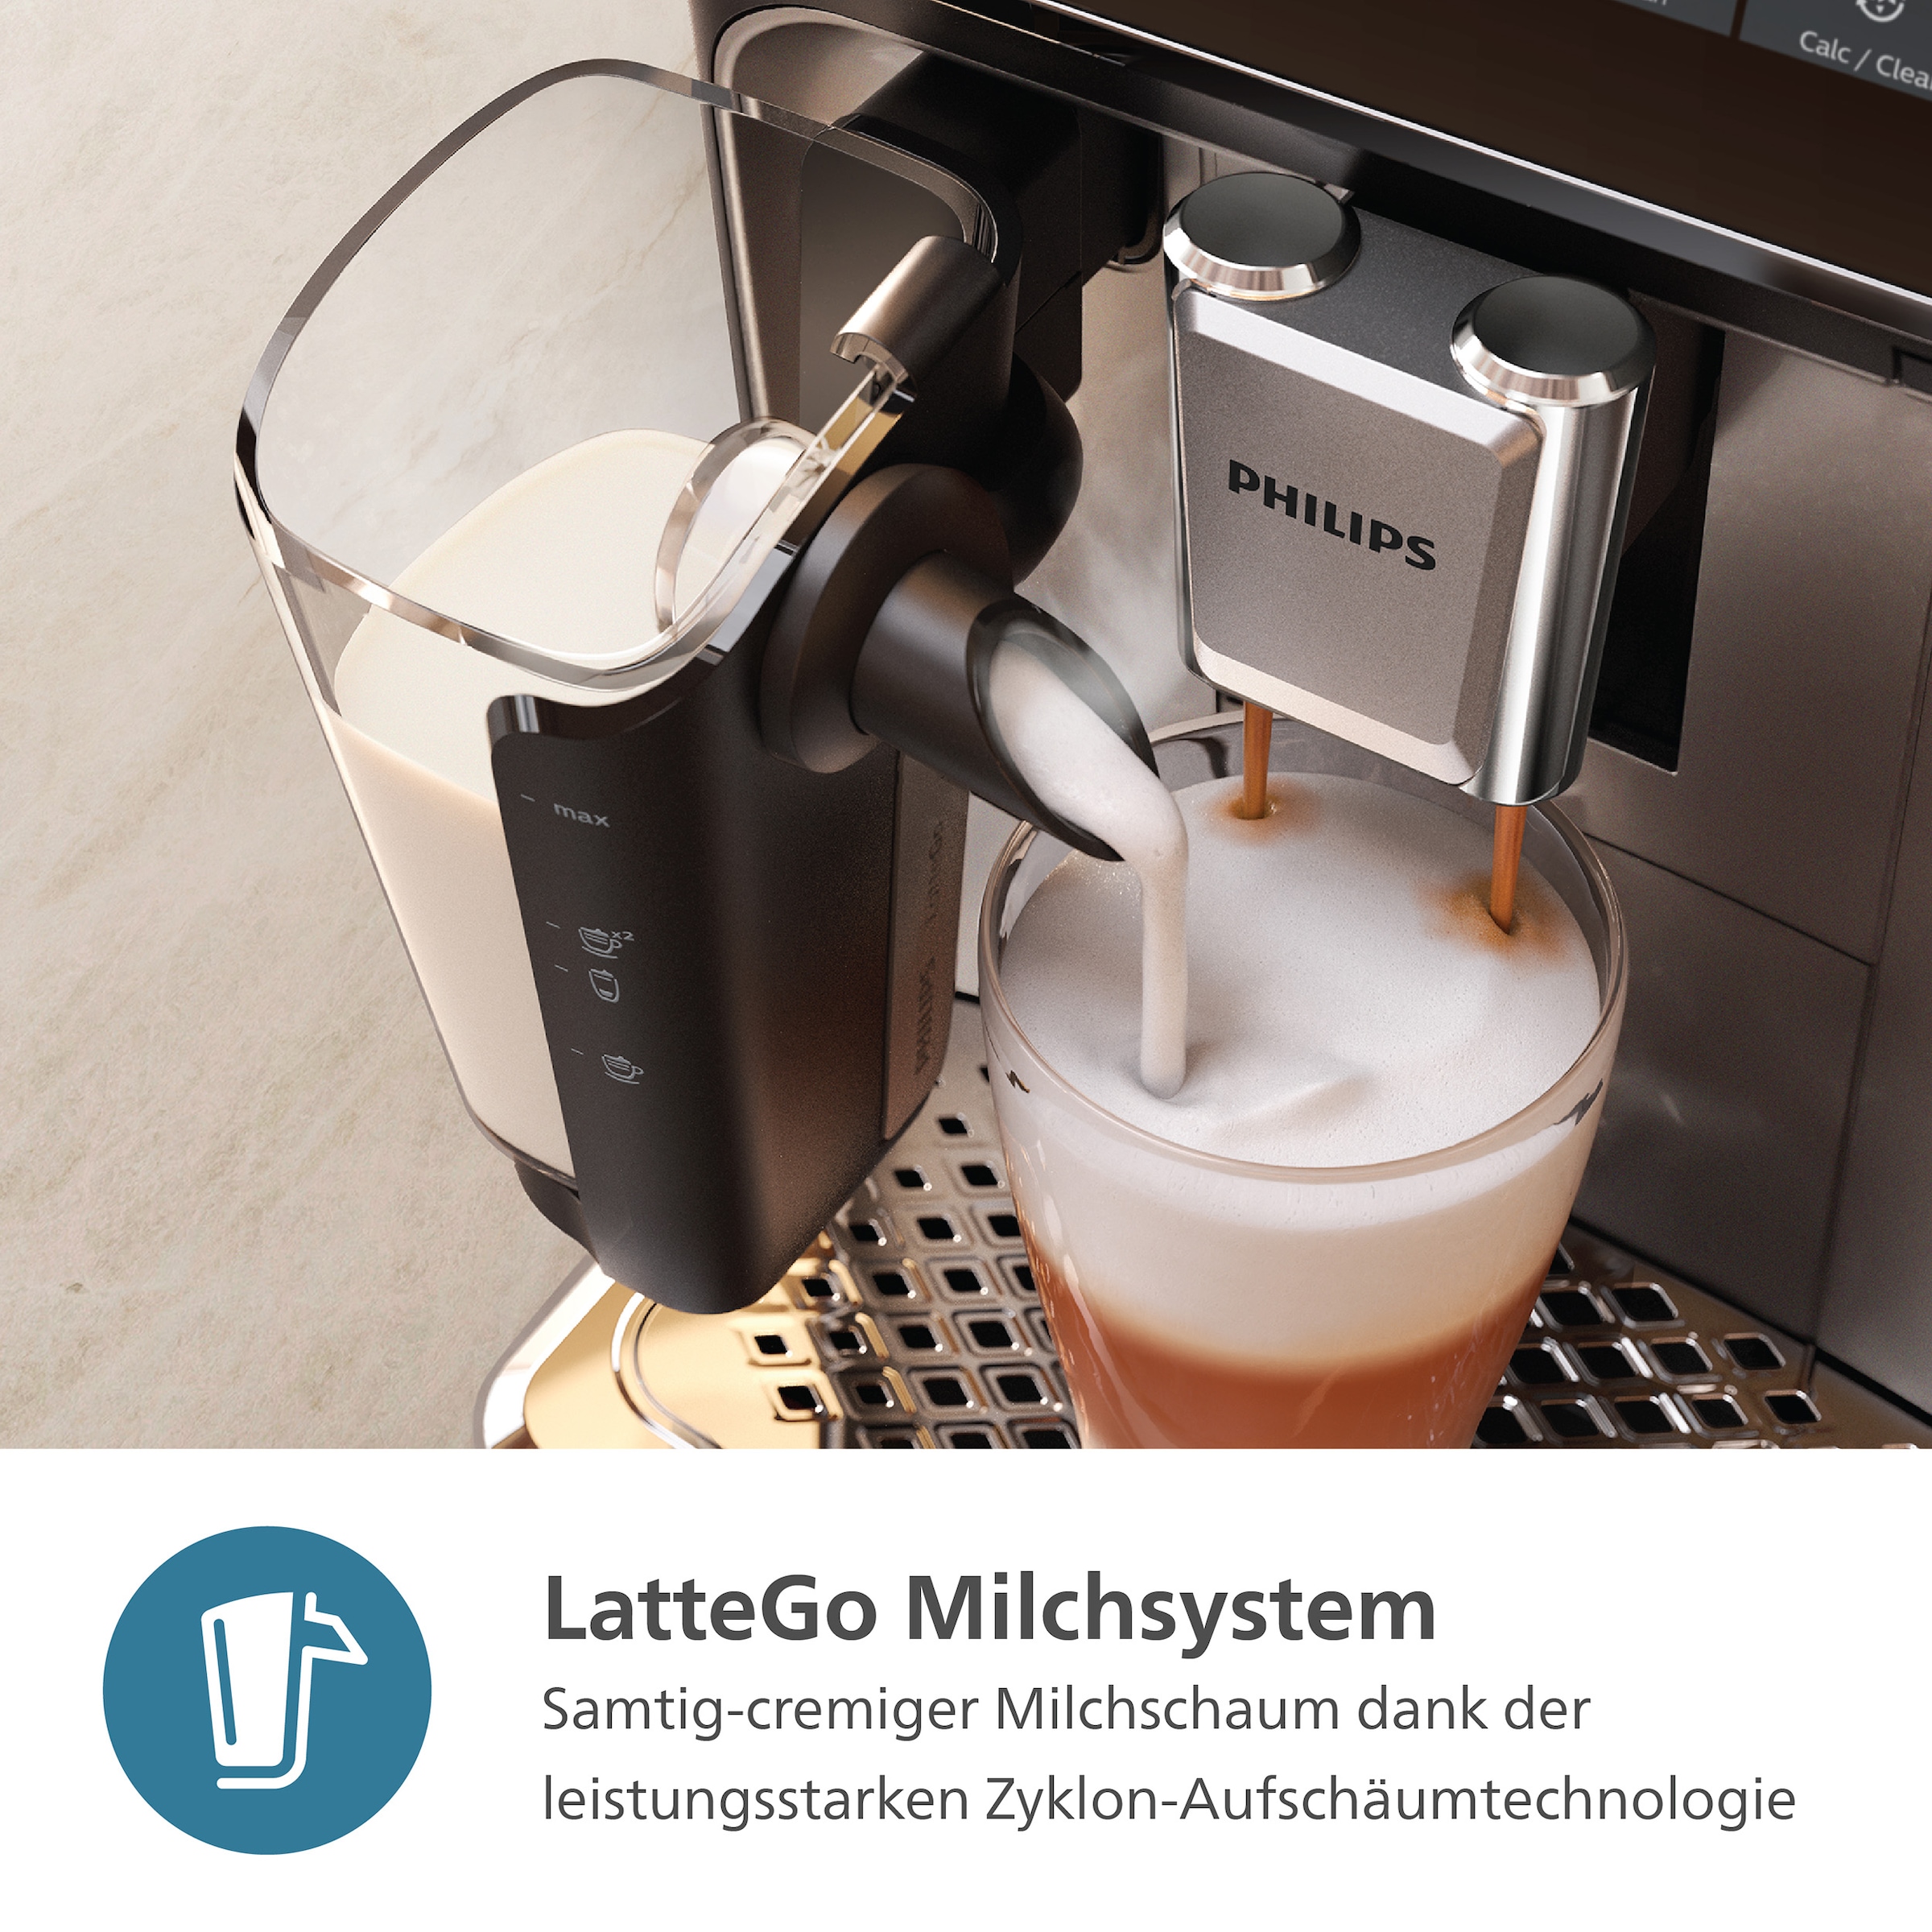 3300 Kaffeevollautomat Jahren XXL 6 Series«, mit Kaffeespezialitäten, »EP3343/50 Weiß/Schwarz LatteGo-Milchsystem, mit 3 Philips Garantie